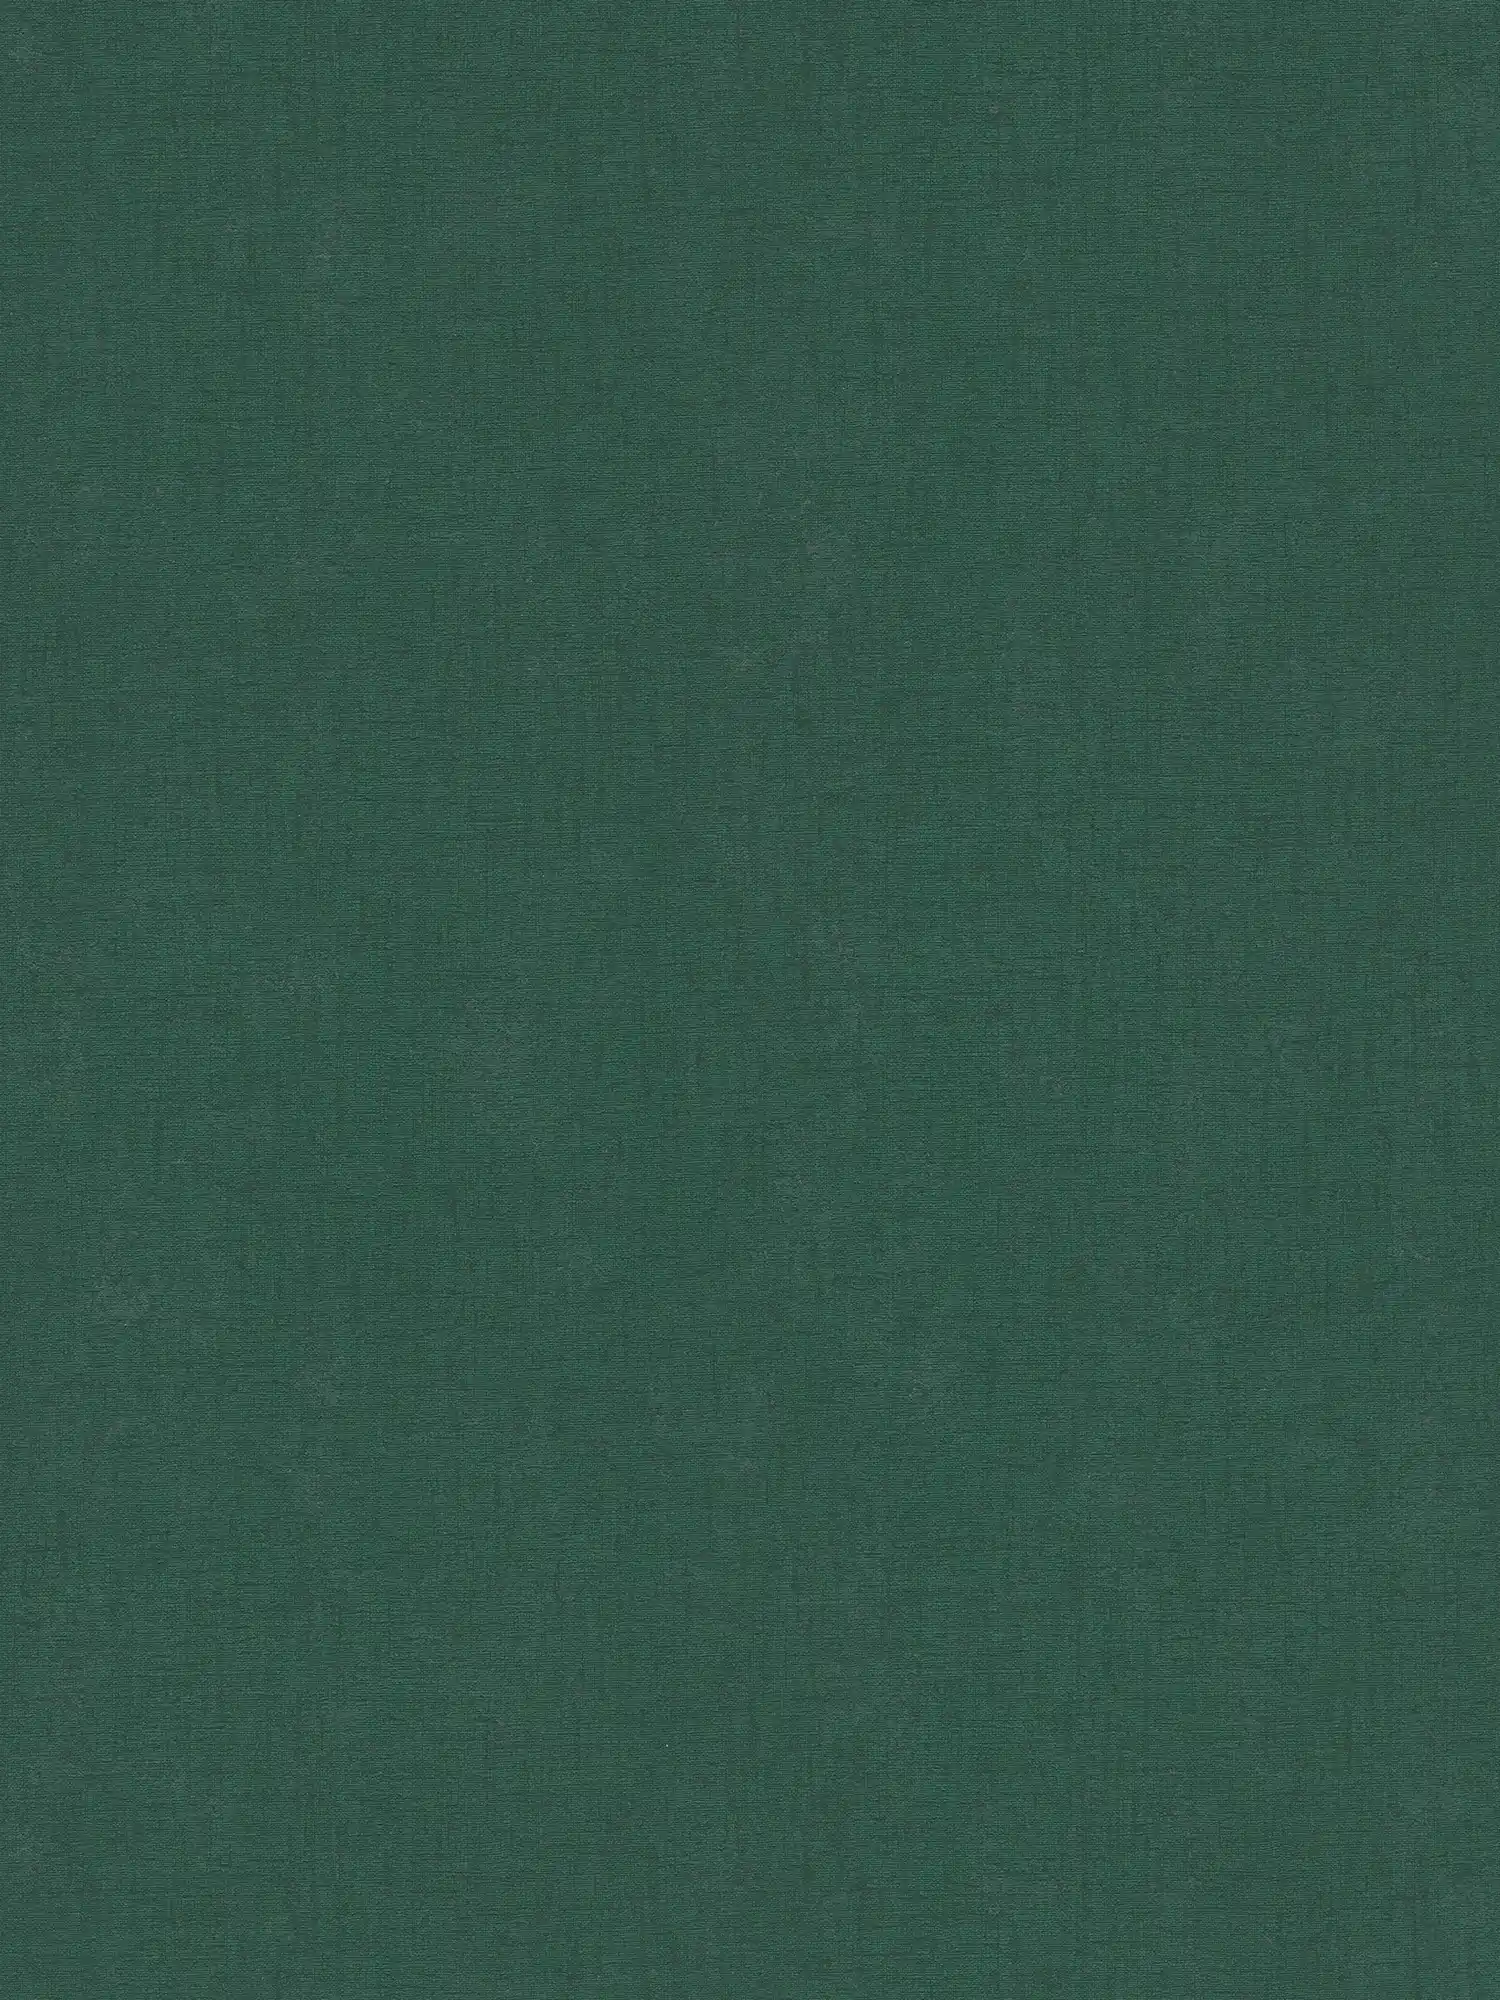 Carta da parati monocolore in tessuto non tessuto a trama leggera - verde, verde scuro
